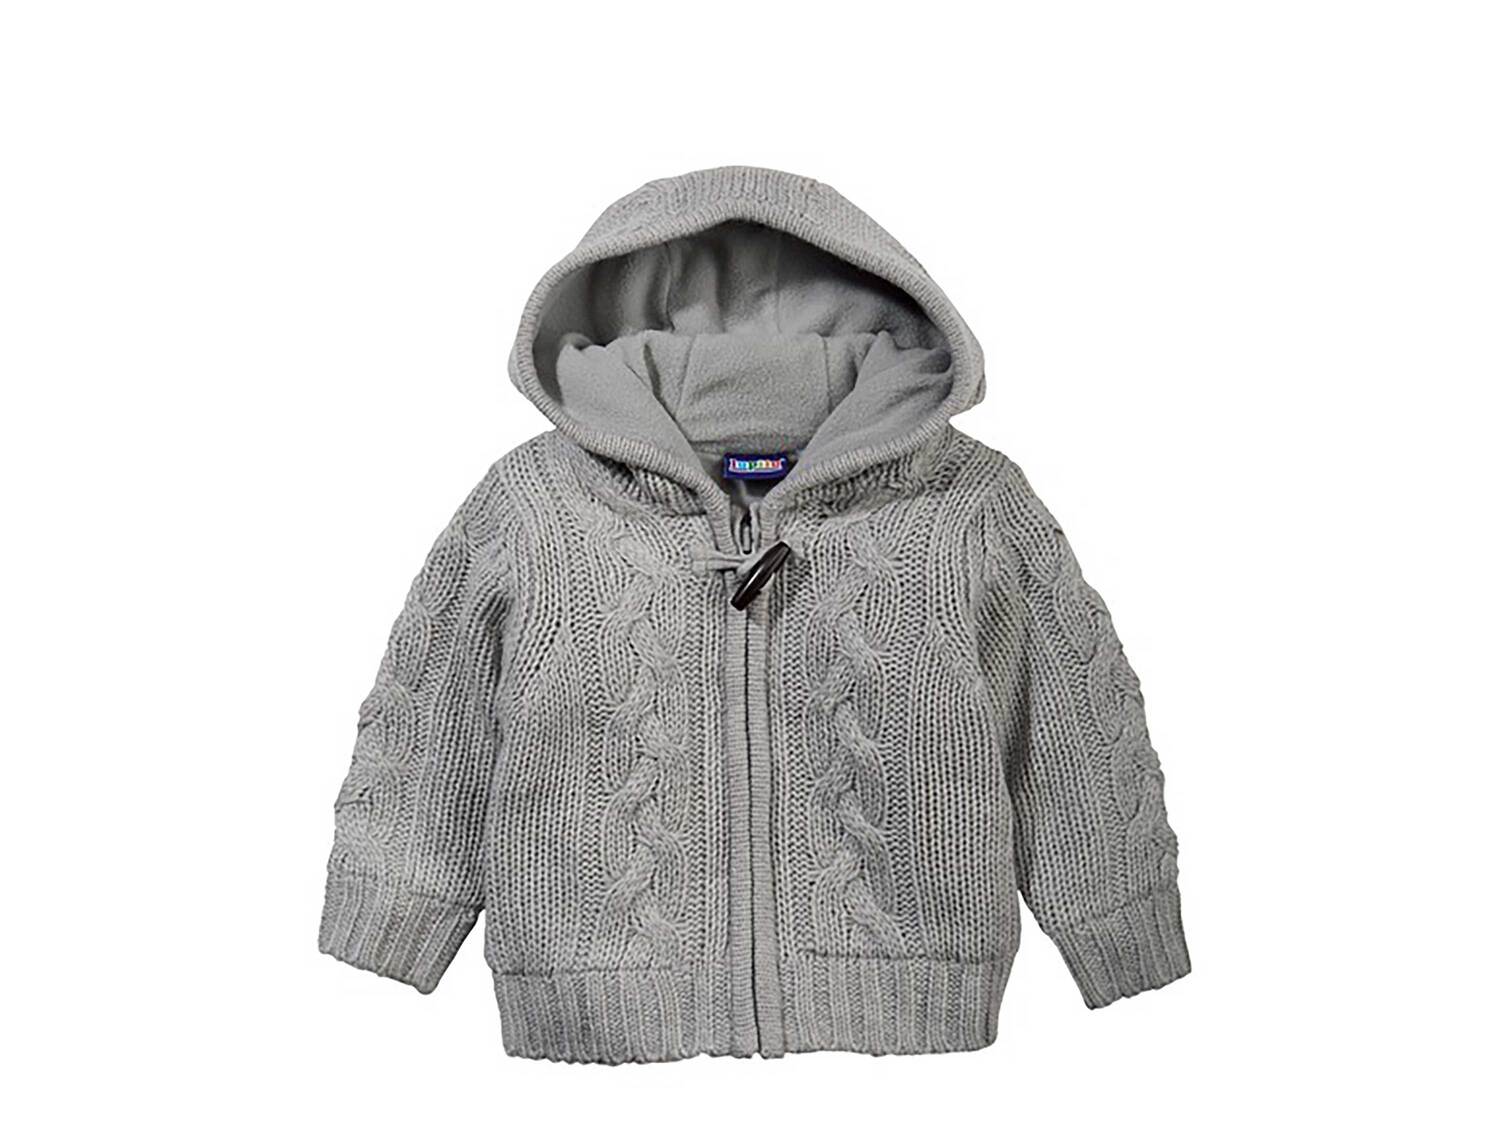 Sweter ocieplany Lupilu, cena 5,00 PLN 
różne wzory 
- rozmiary: 62-92**
** ...